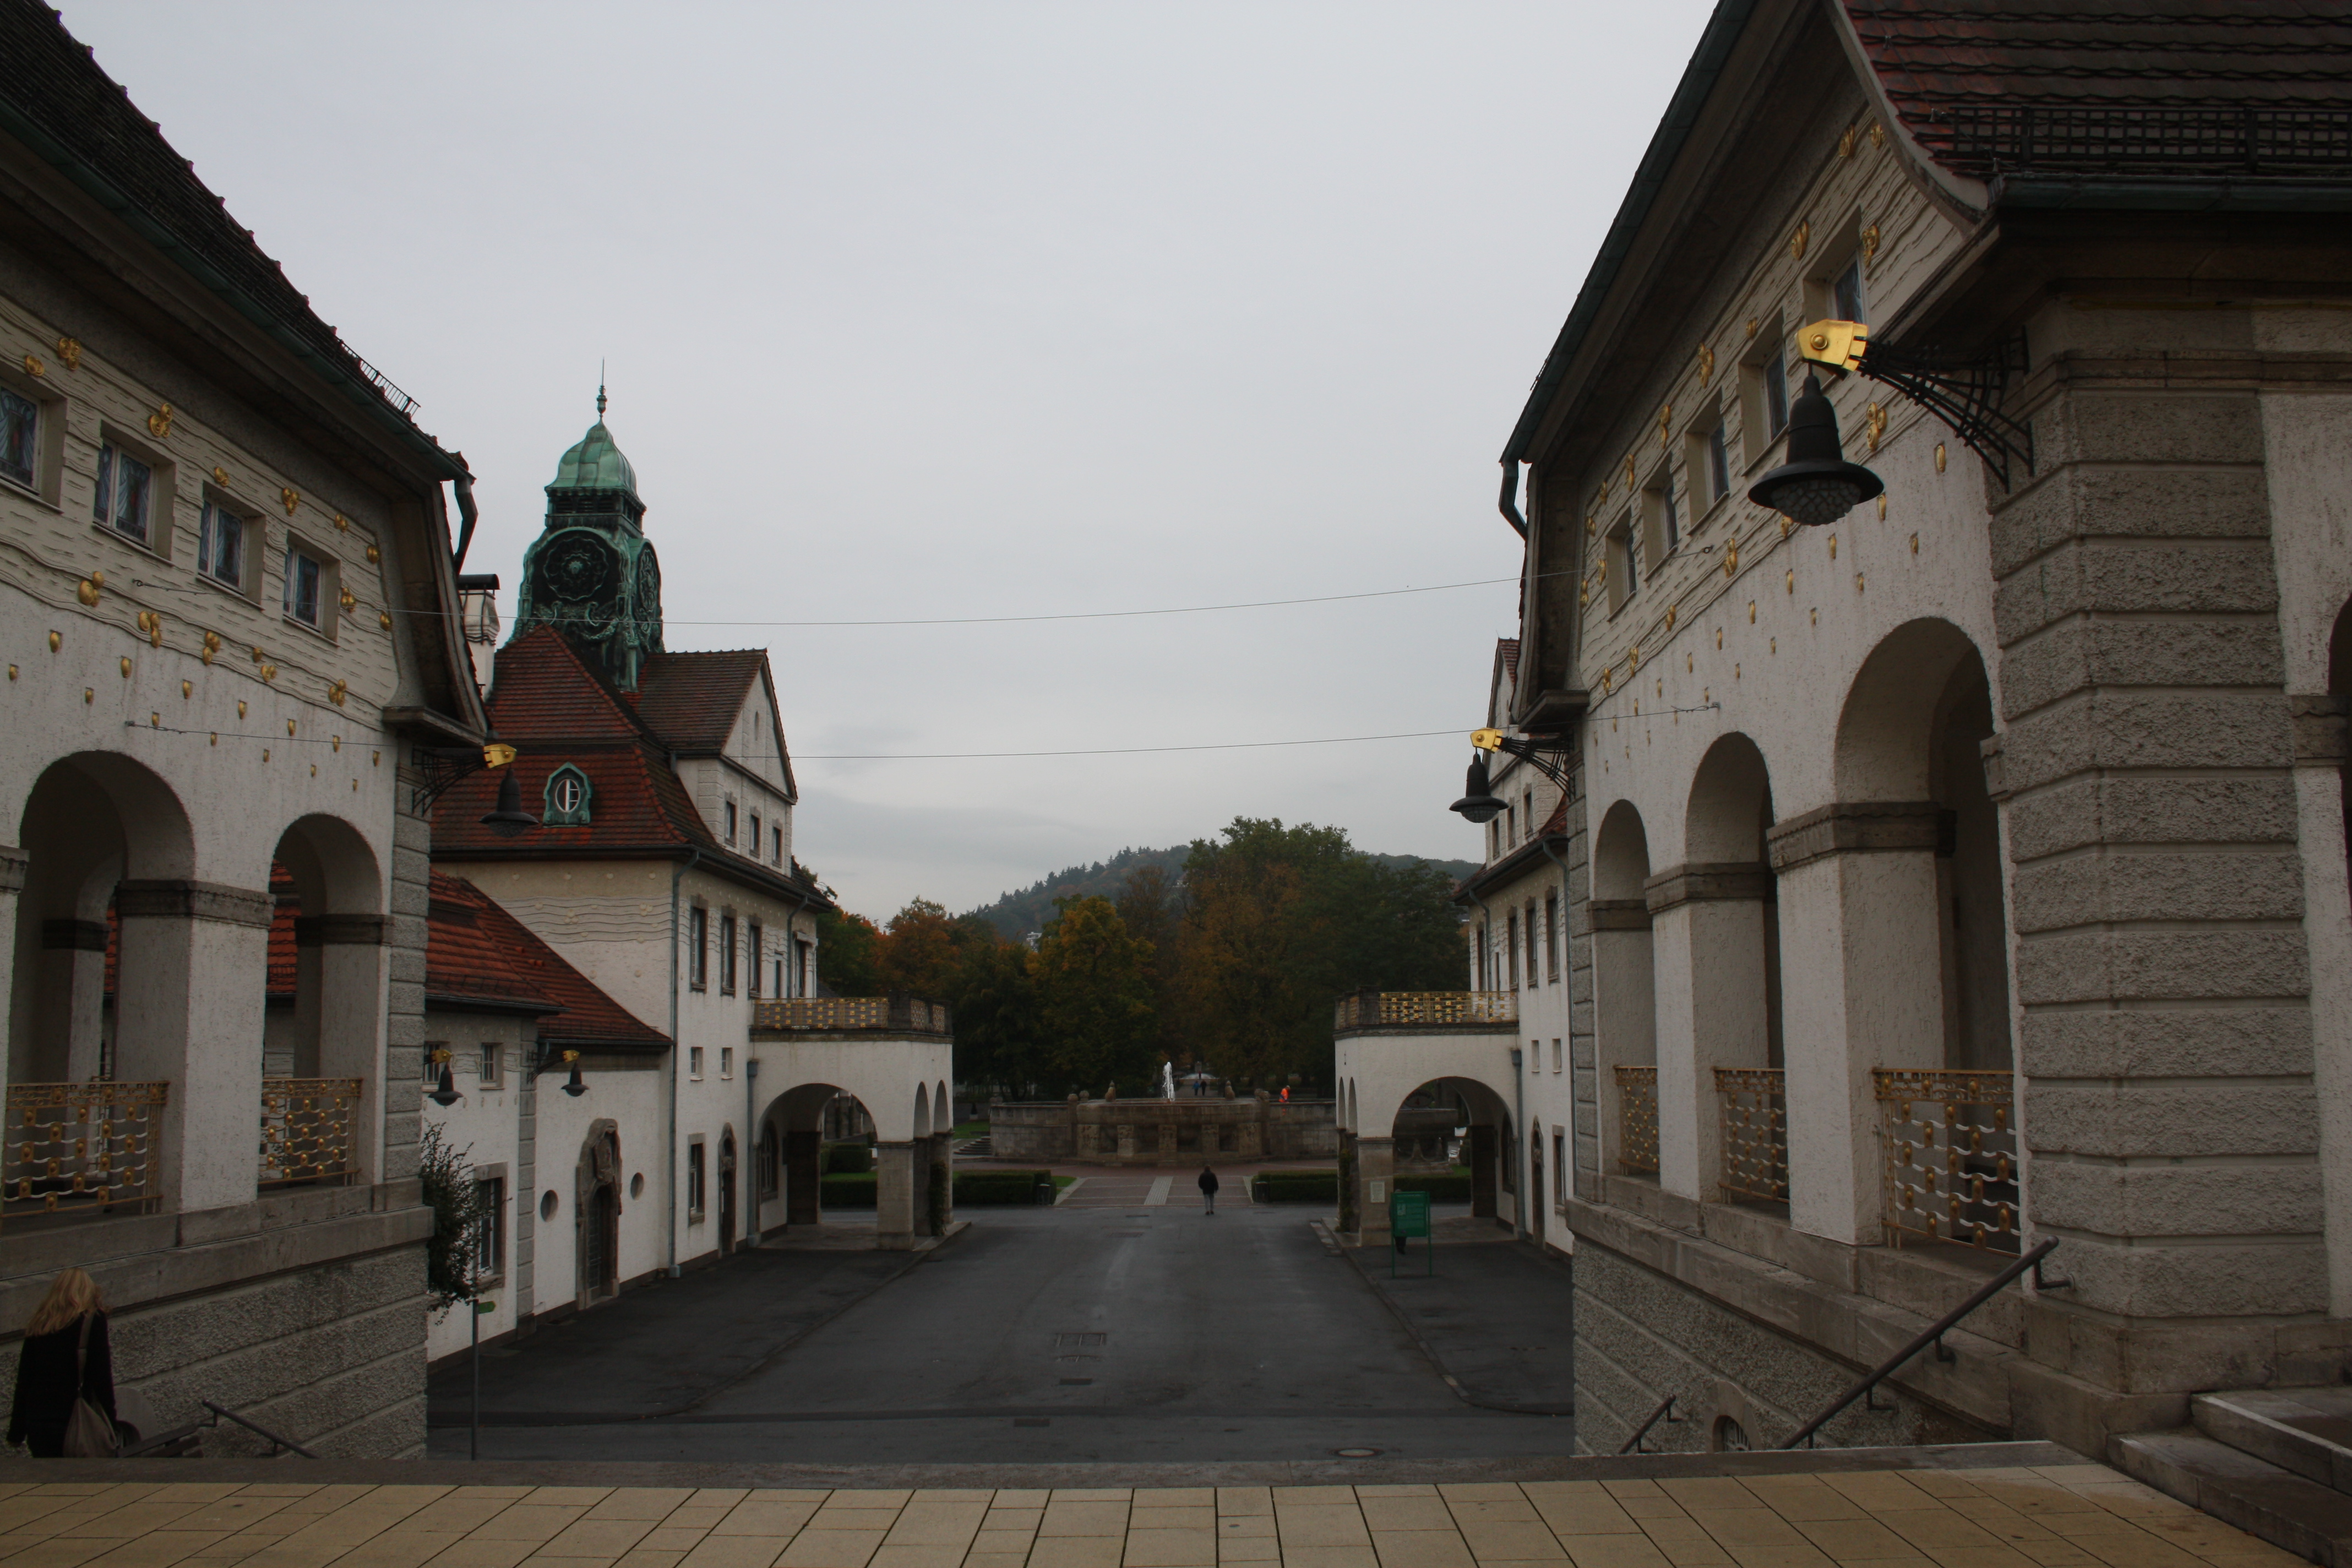 Der Sprudelhof von Bad Nauheim entstand zwischen 1905 und 1912, inklusive der 6 Badehäuser mit Wartesälen, zwei  Verwaltungsgebäuden und insgesamt 264 Badezellen.
